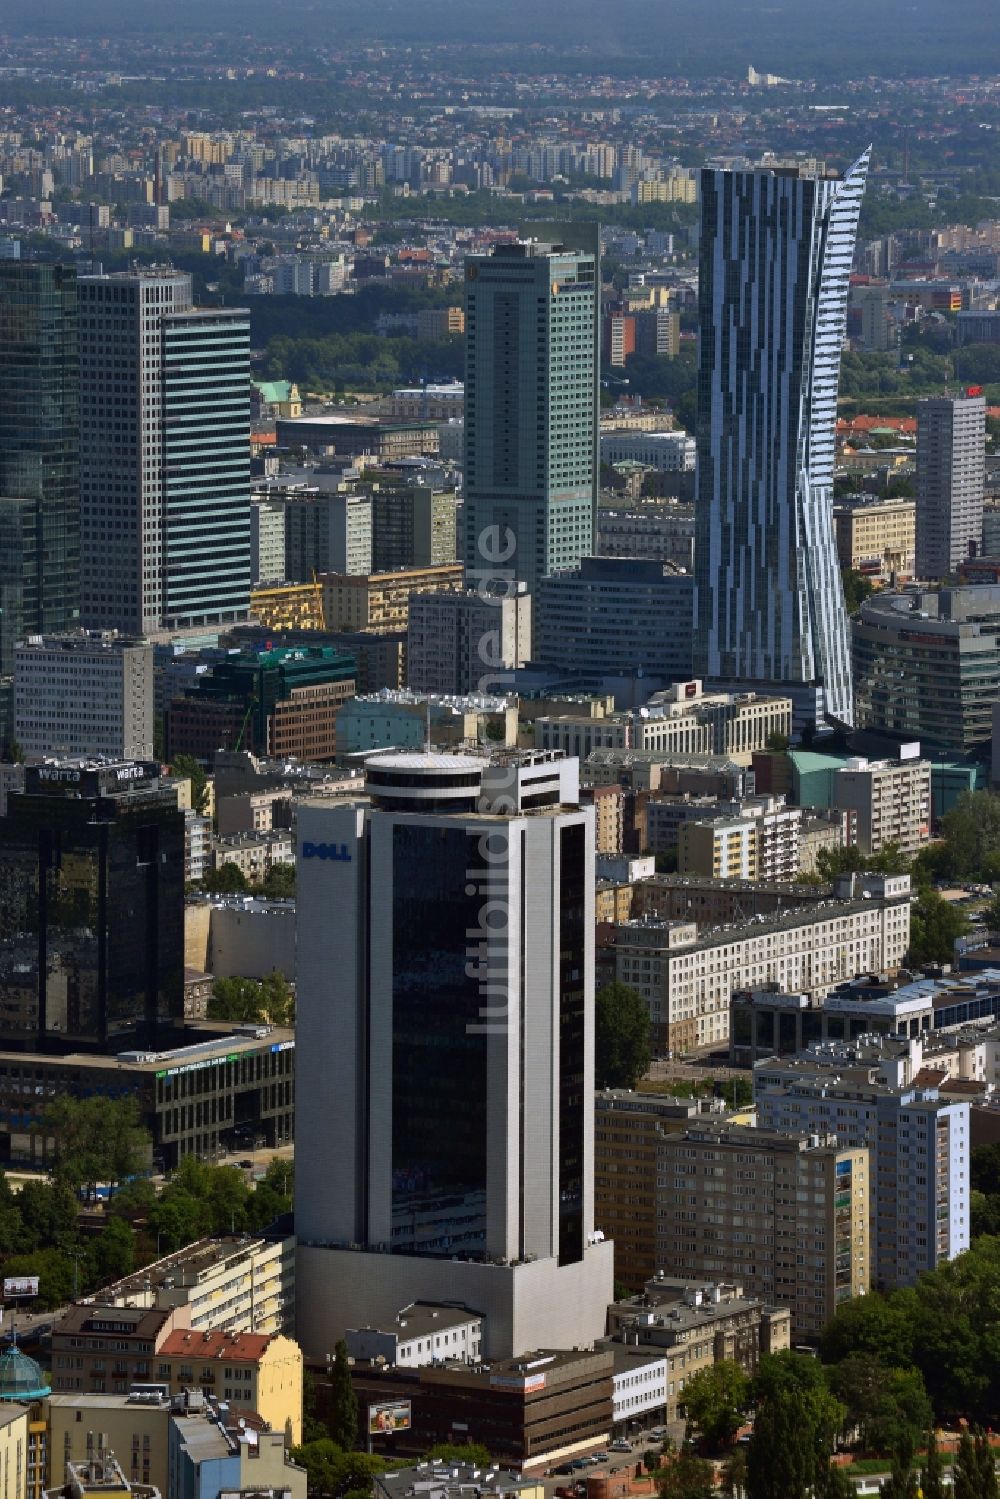 Luftbild Warschau - Bürohochhaus Millennium Plaza im Stadtzentrum von Warschau in Polen